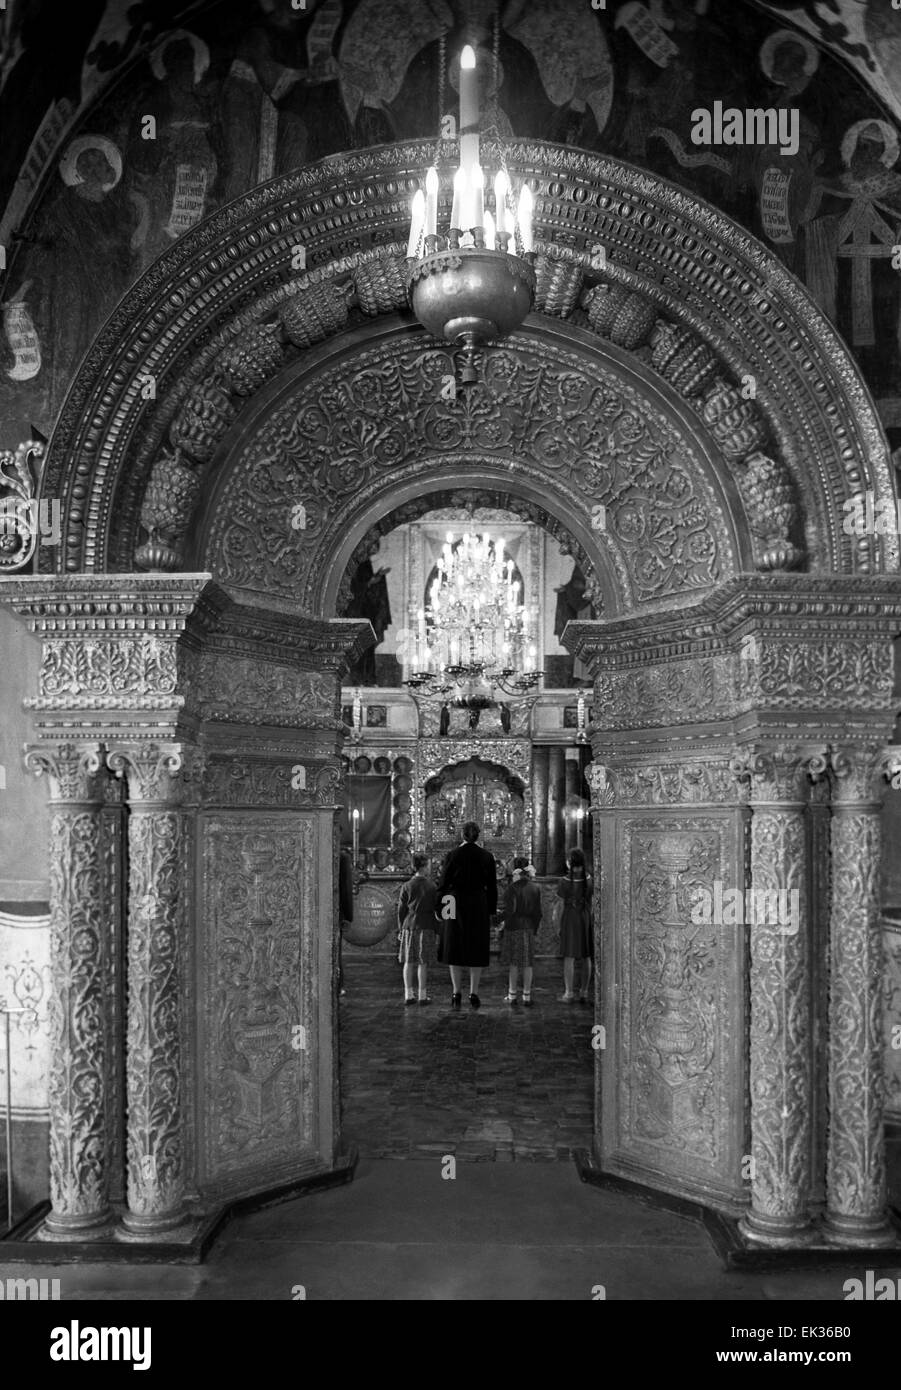 Itar Tass La Urss Moscú En El Interior De La Catedral De La Anunciación Del Kremlin De Moscú